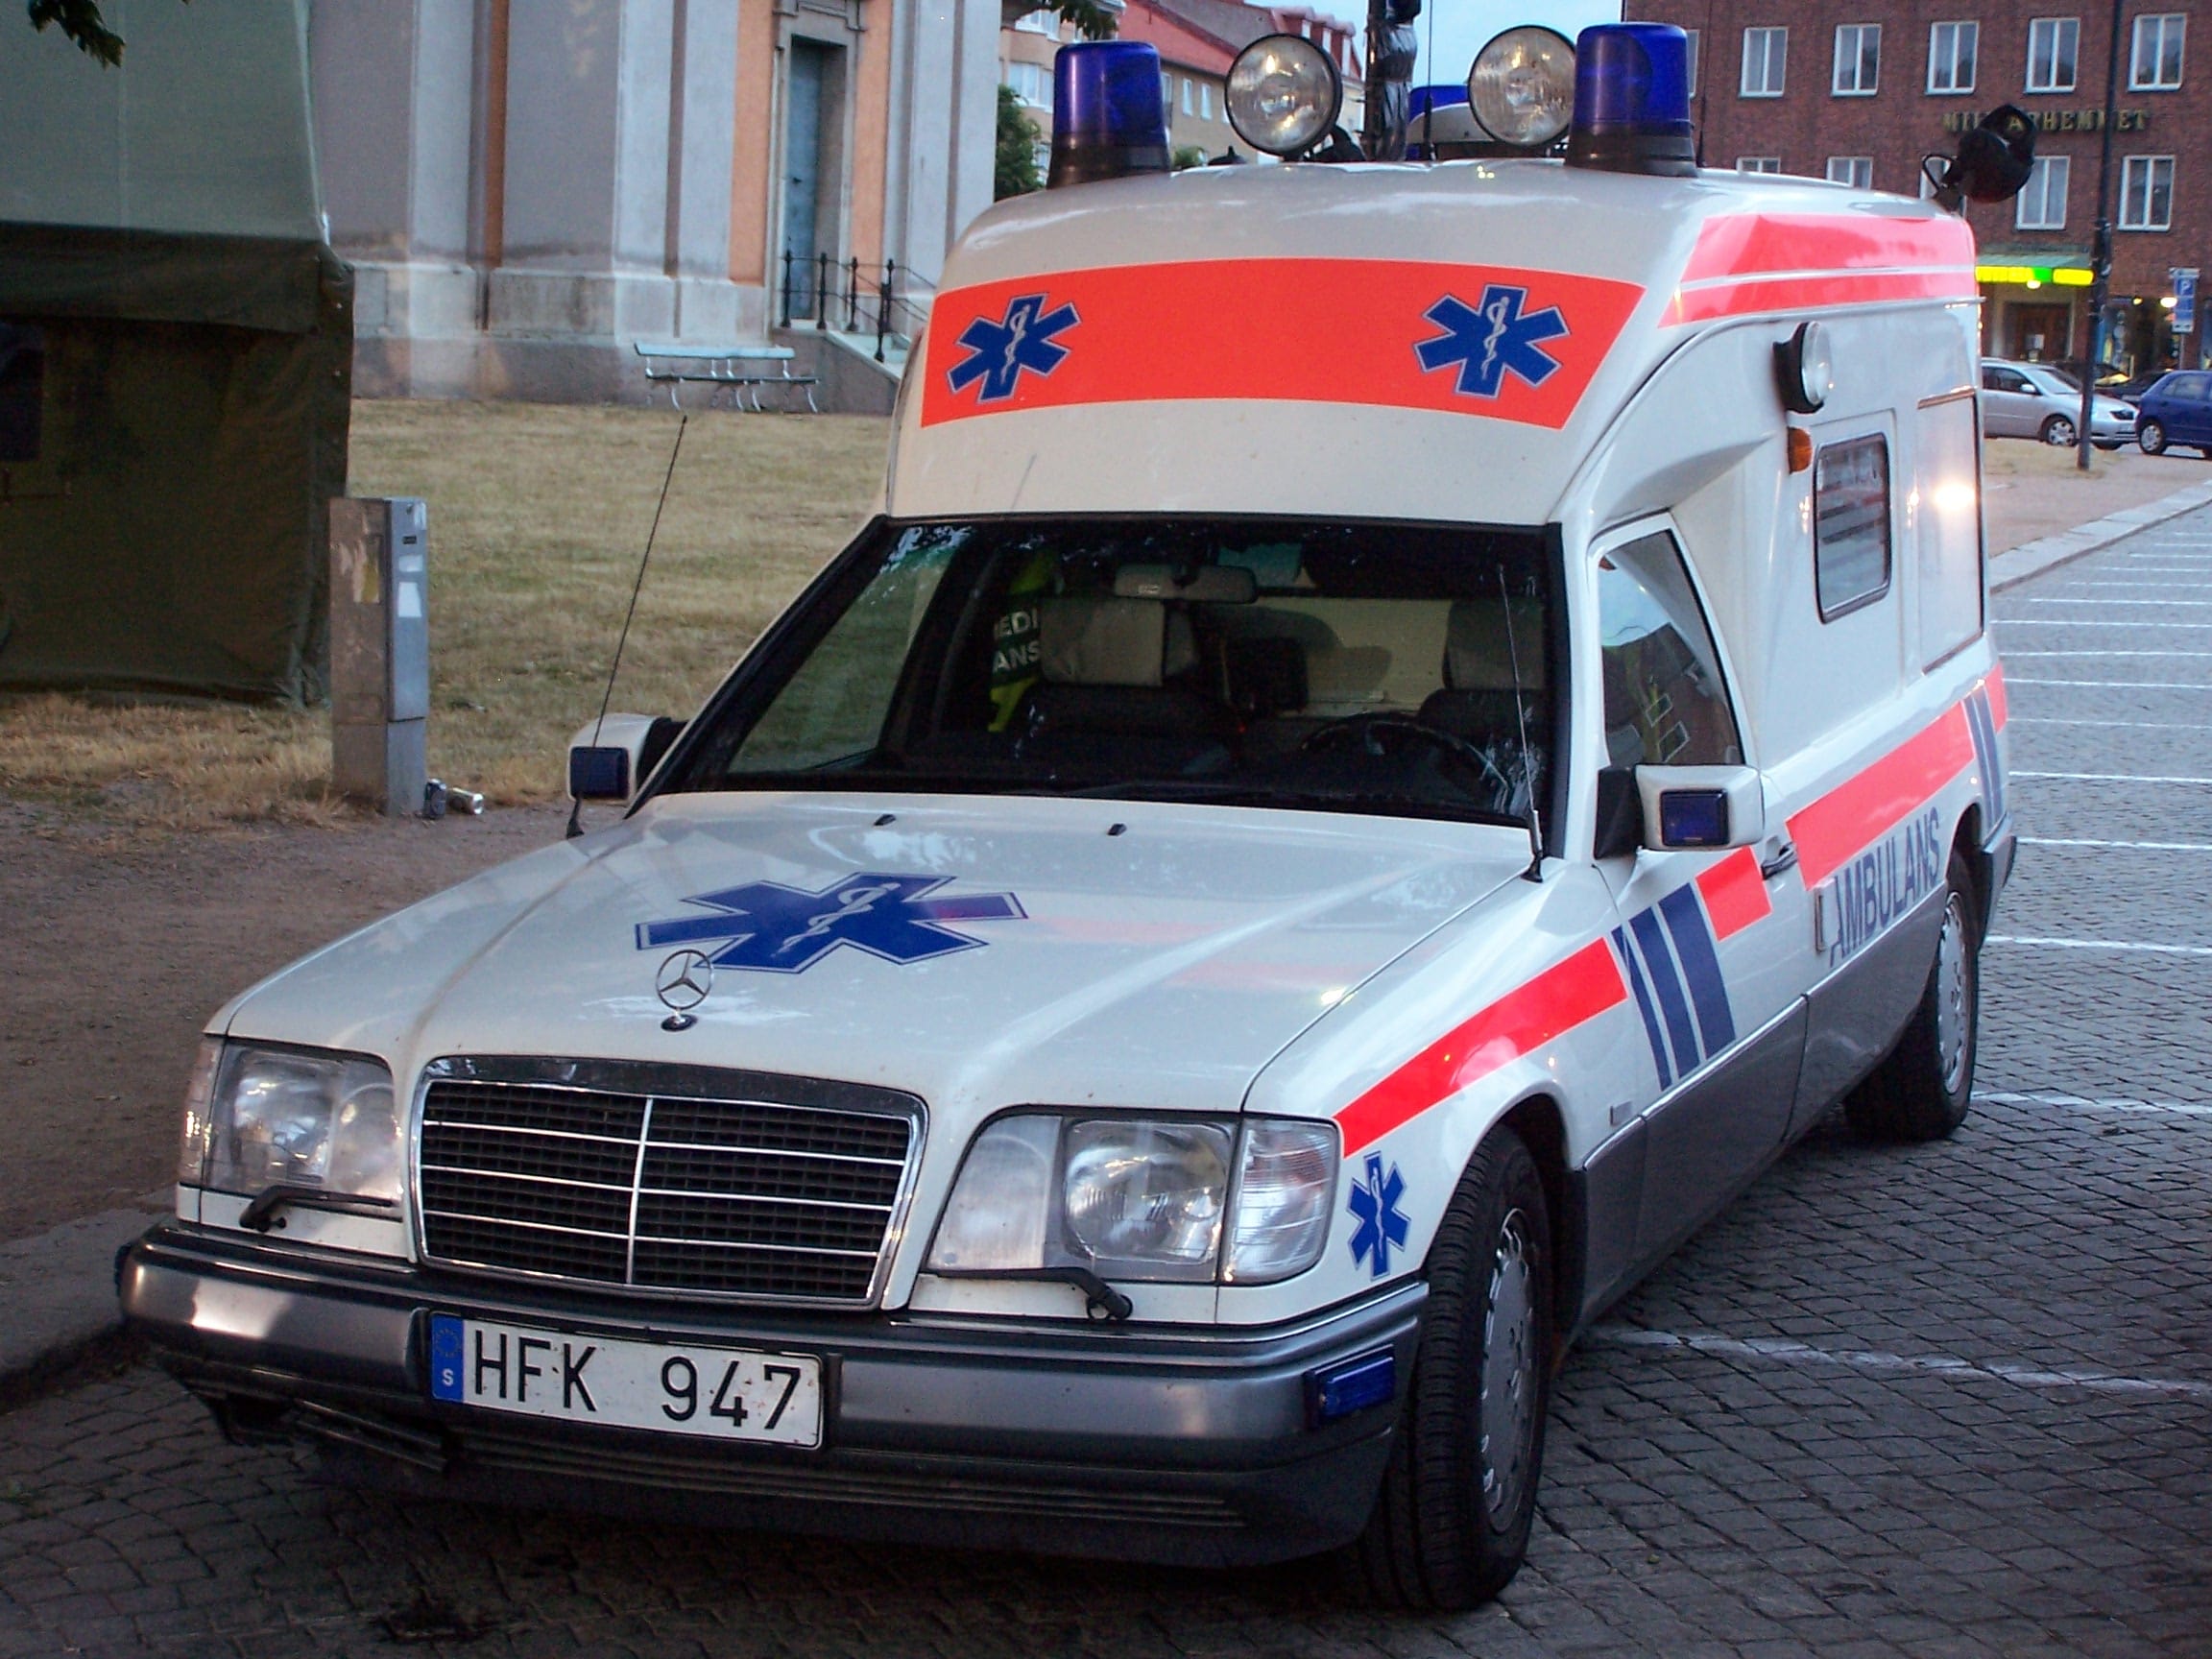 Swedish ambulance in Blekinge